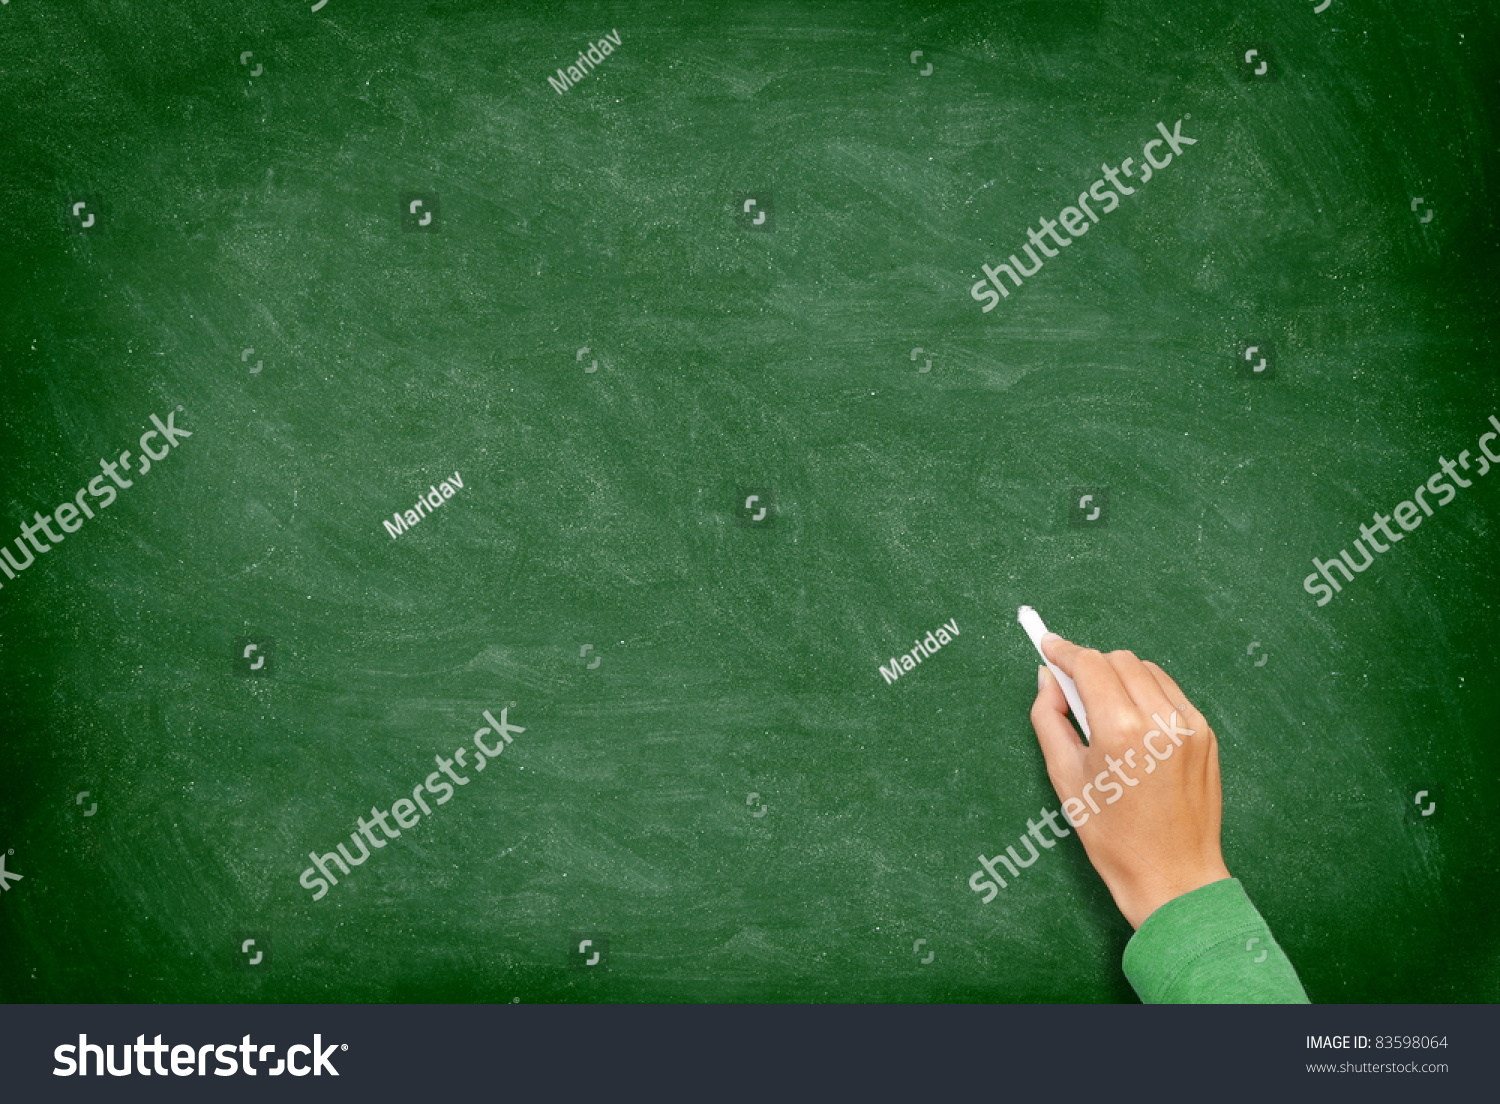 Blackboard Learn ™